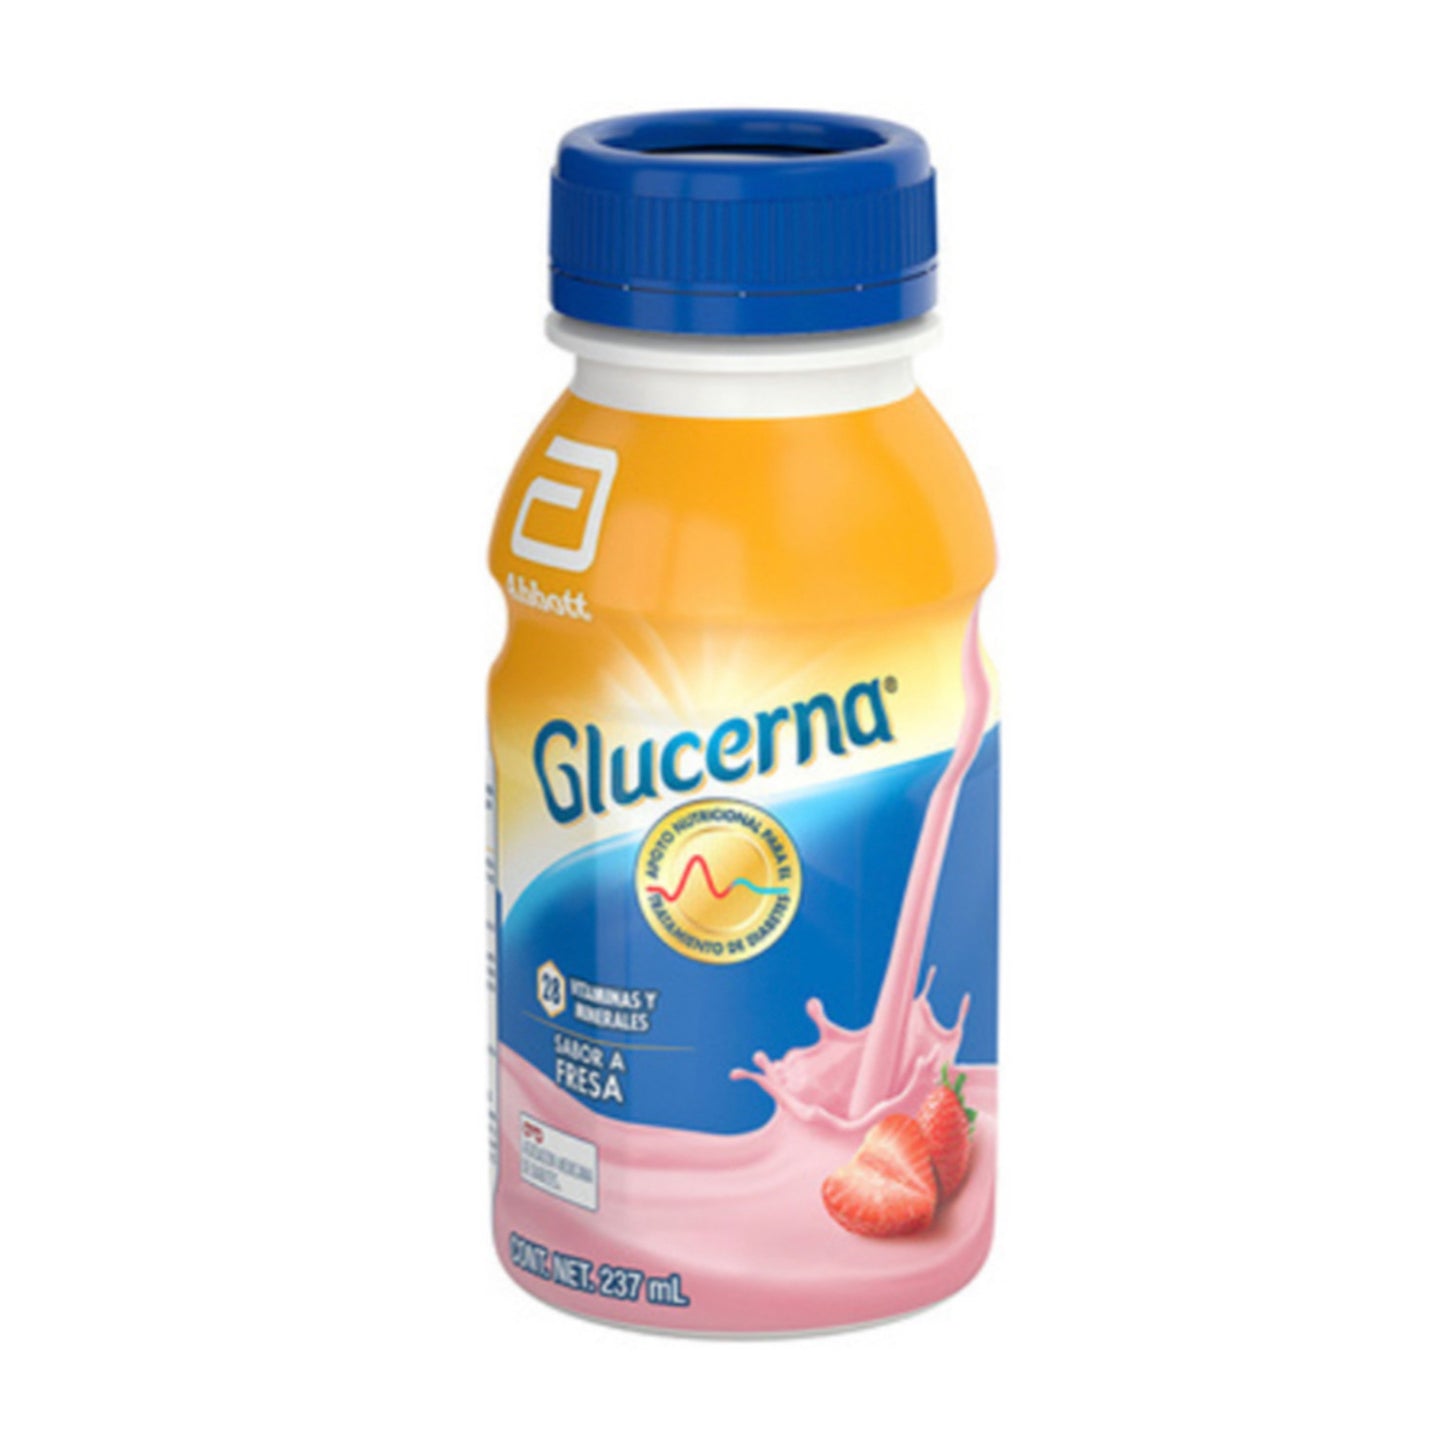 Bebida, marca Glucerna®, sabor a fresa, sin azúcar, de 237 ml, 28 vitaminas y minerales